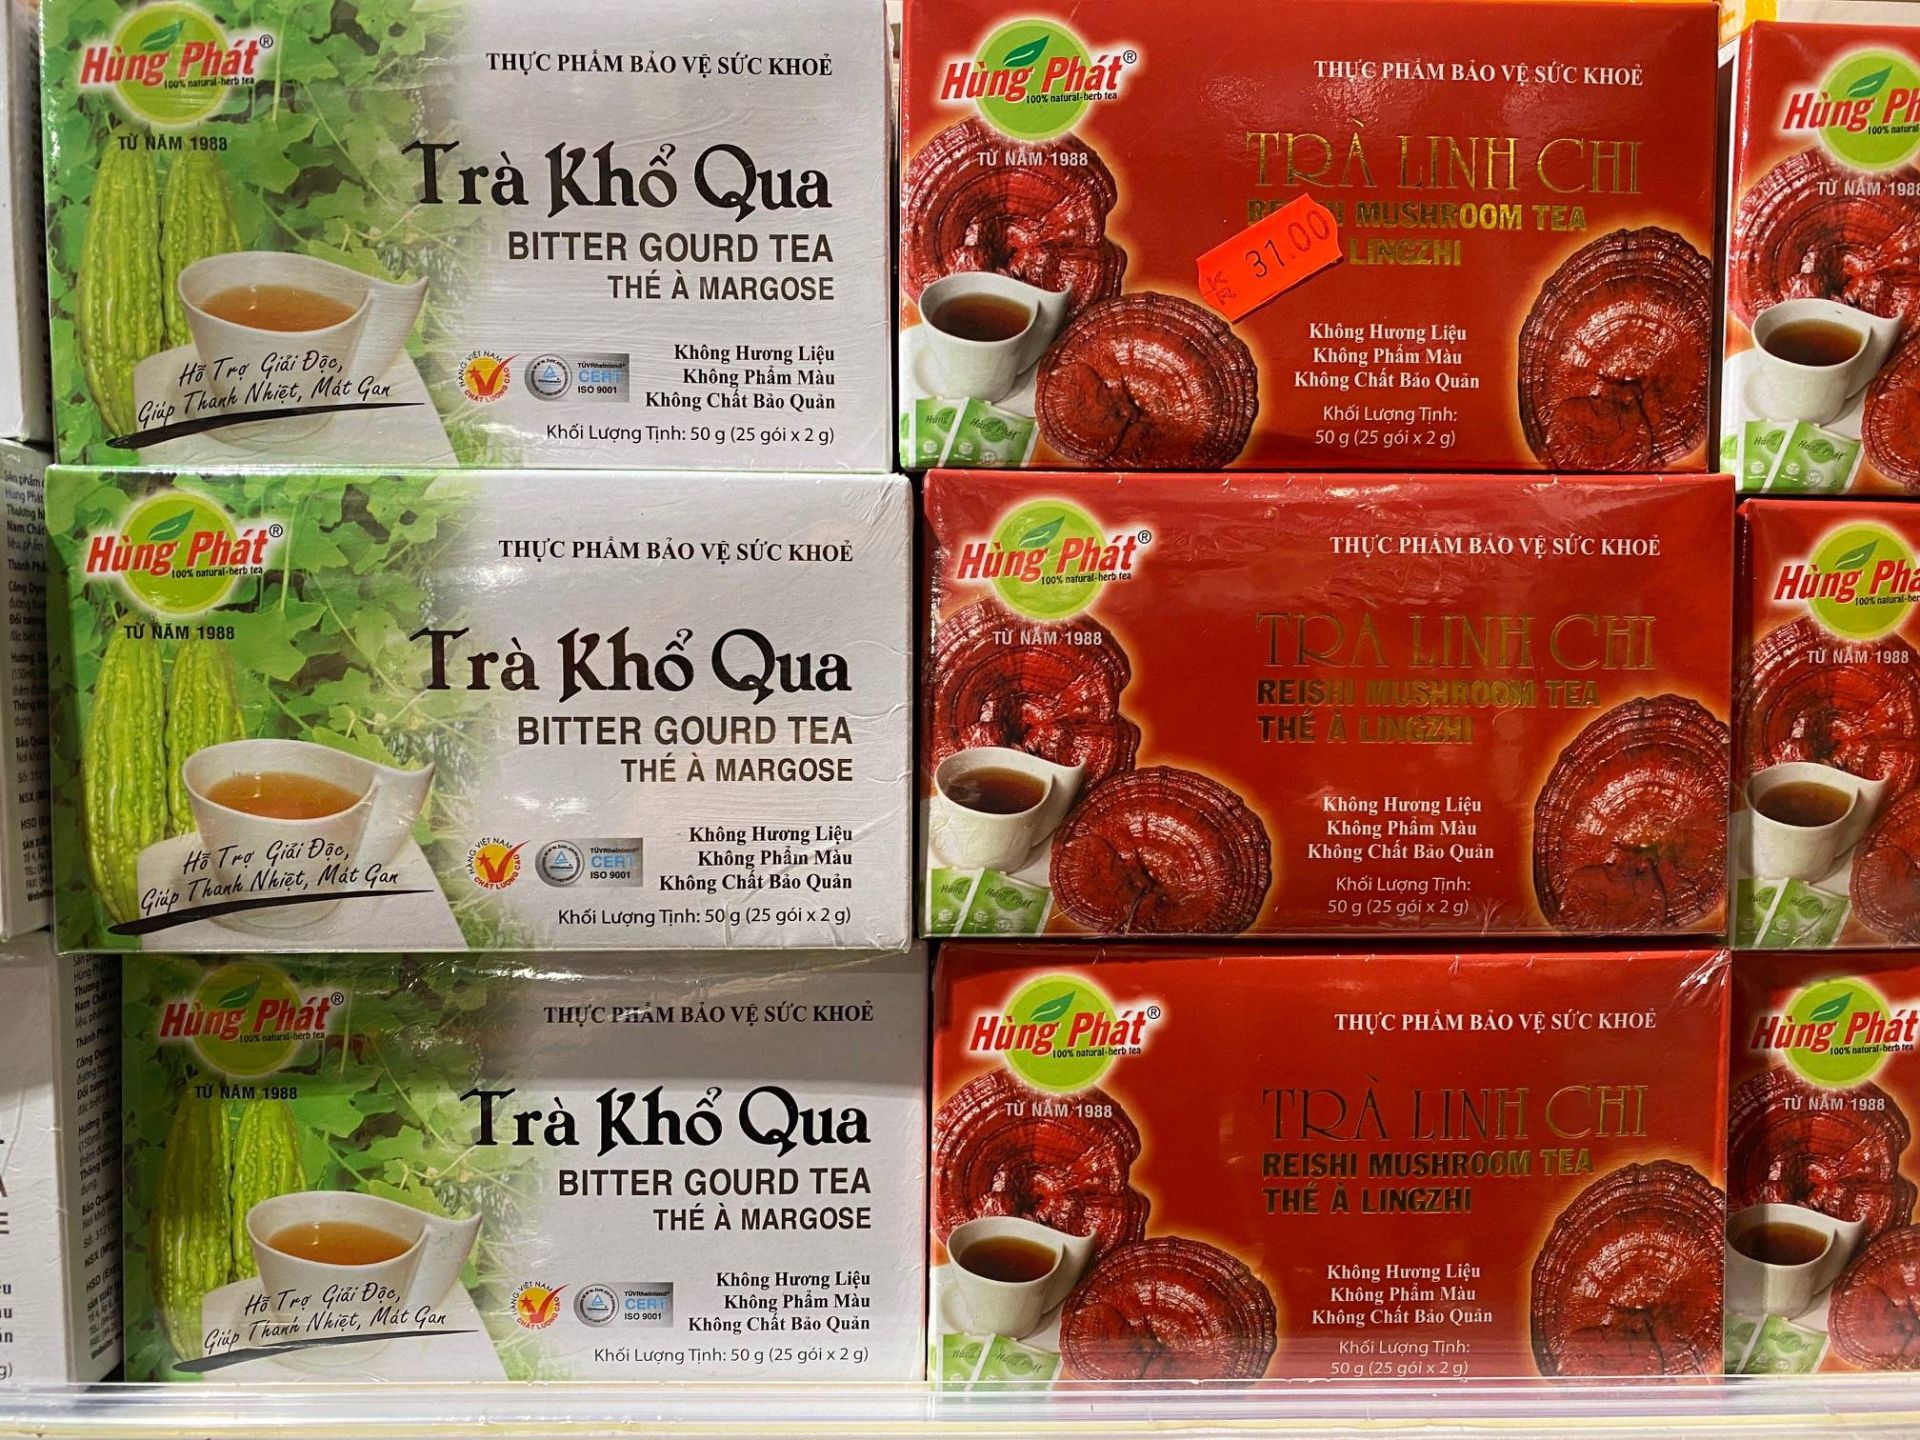 Một số mặt hàng Việt Nam tại các kho hàng châu Á lớn ở Thụy Điển